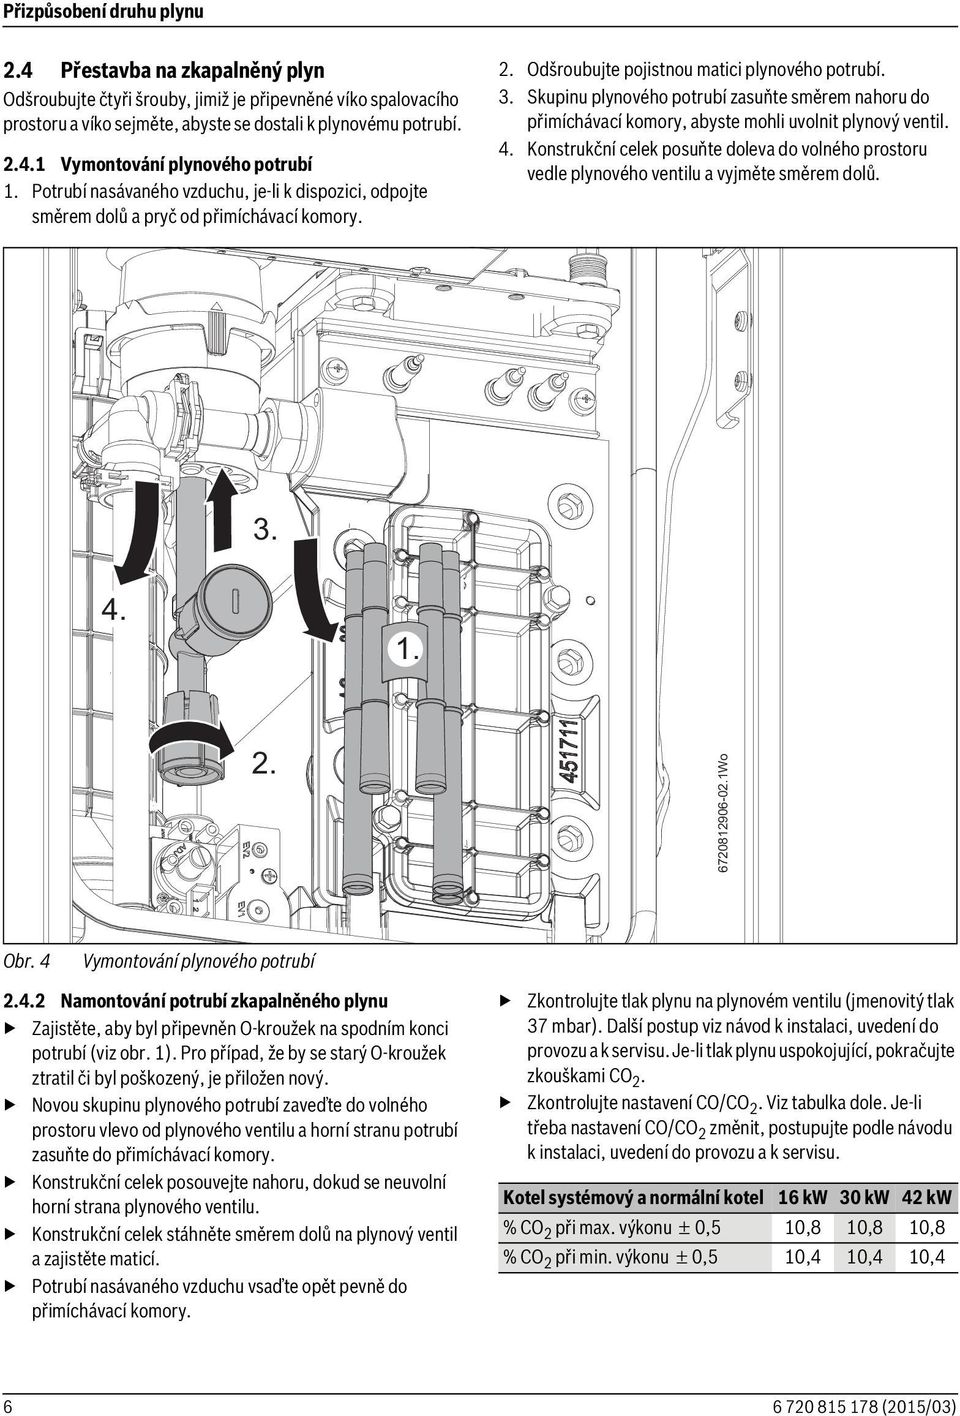 Skupinu plynového potrubí zasuňte směrem nahoru do přimíchávací komory, abyste mohli uvolnit plynový ventil. 4.